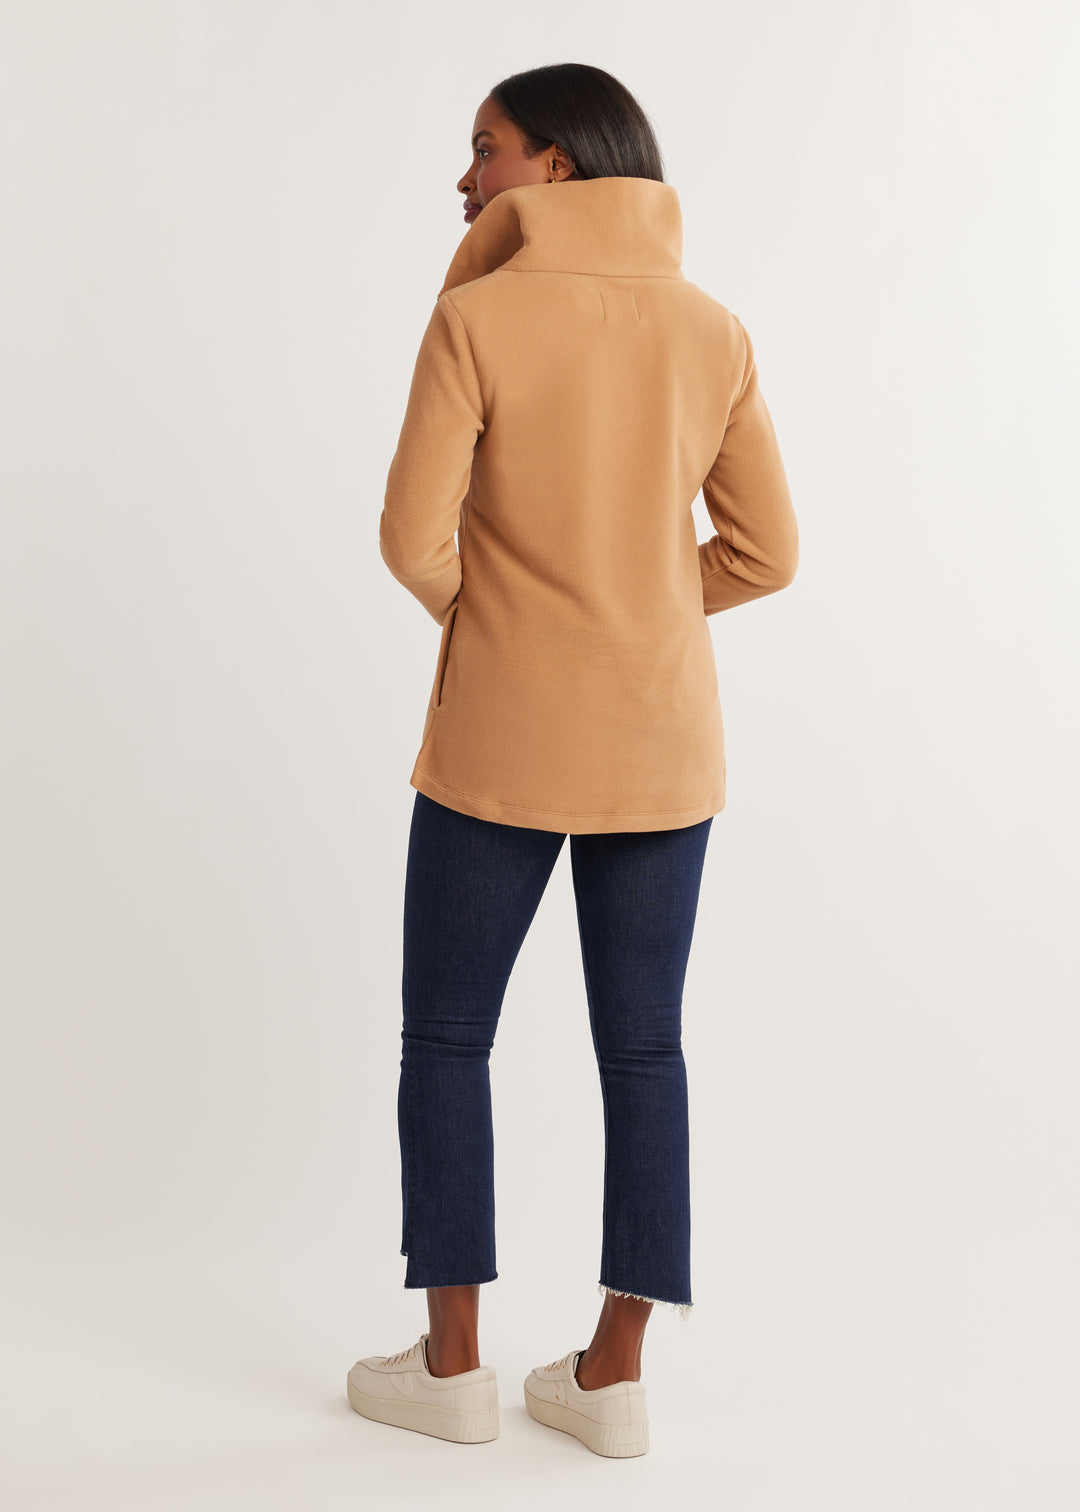 Prospect Pullover in Vello Fleece (Camel)